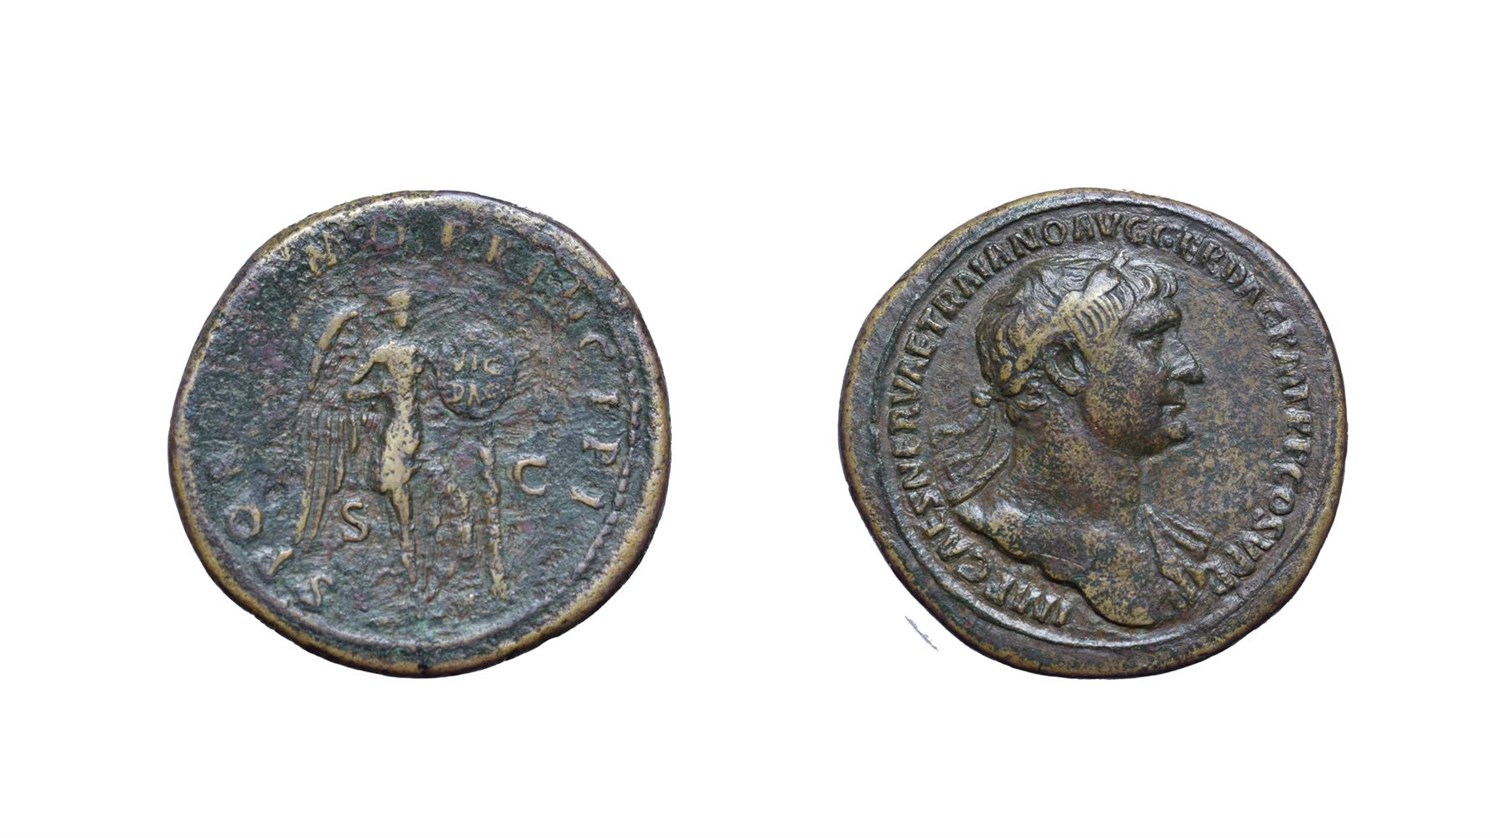 Lot 4014 - Trajan, Brass Sestertius. Rome, 103 - 111 A.D. 25.68g, 35.5mm, 6h. Obv: IMP CAES NERVAE TRAIANO AVG